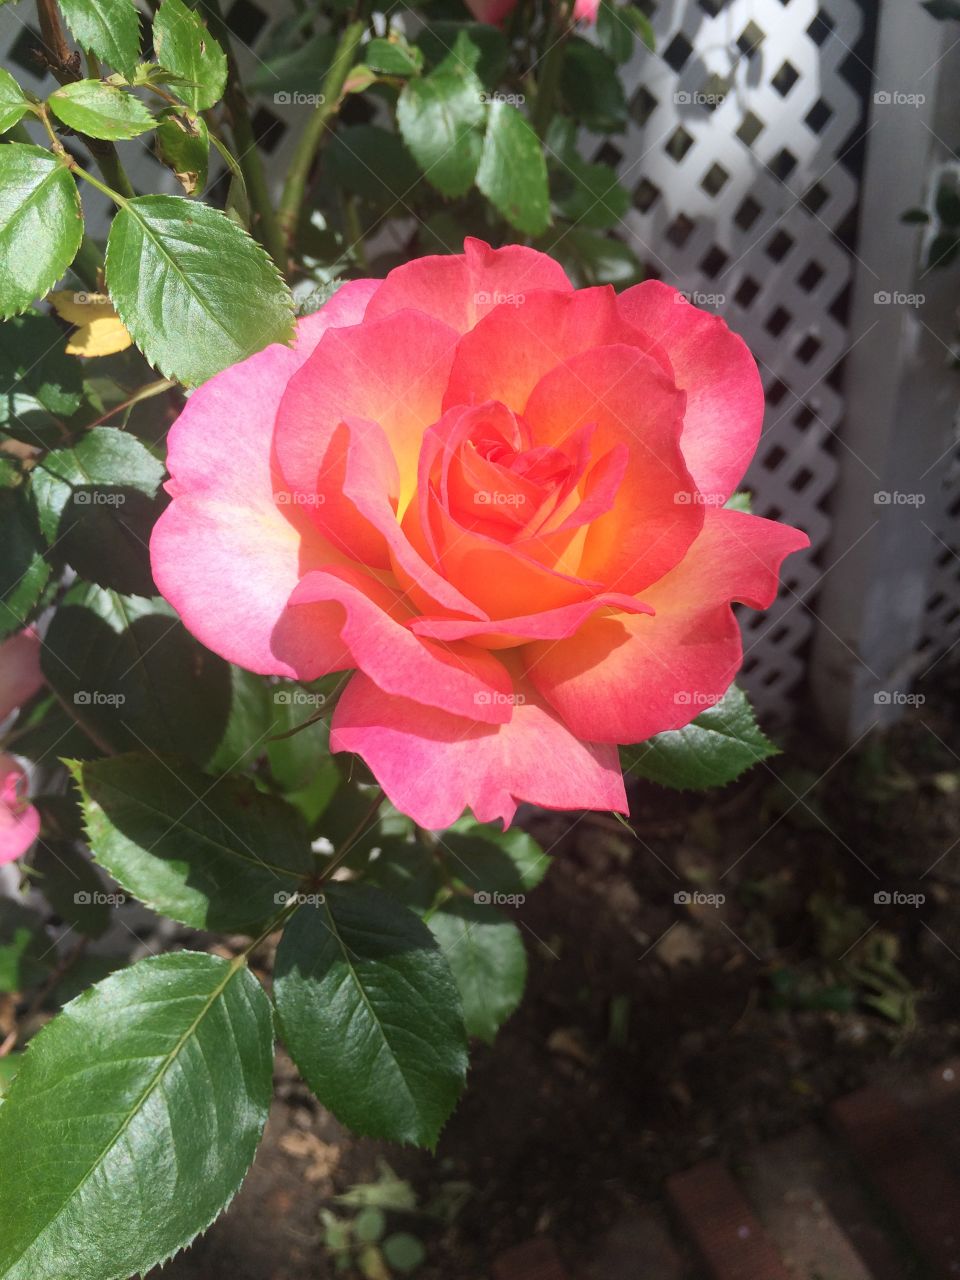 Sunlit hot pink rose